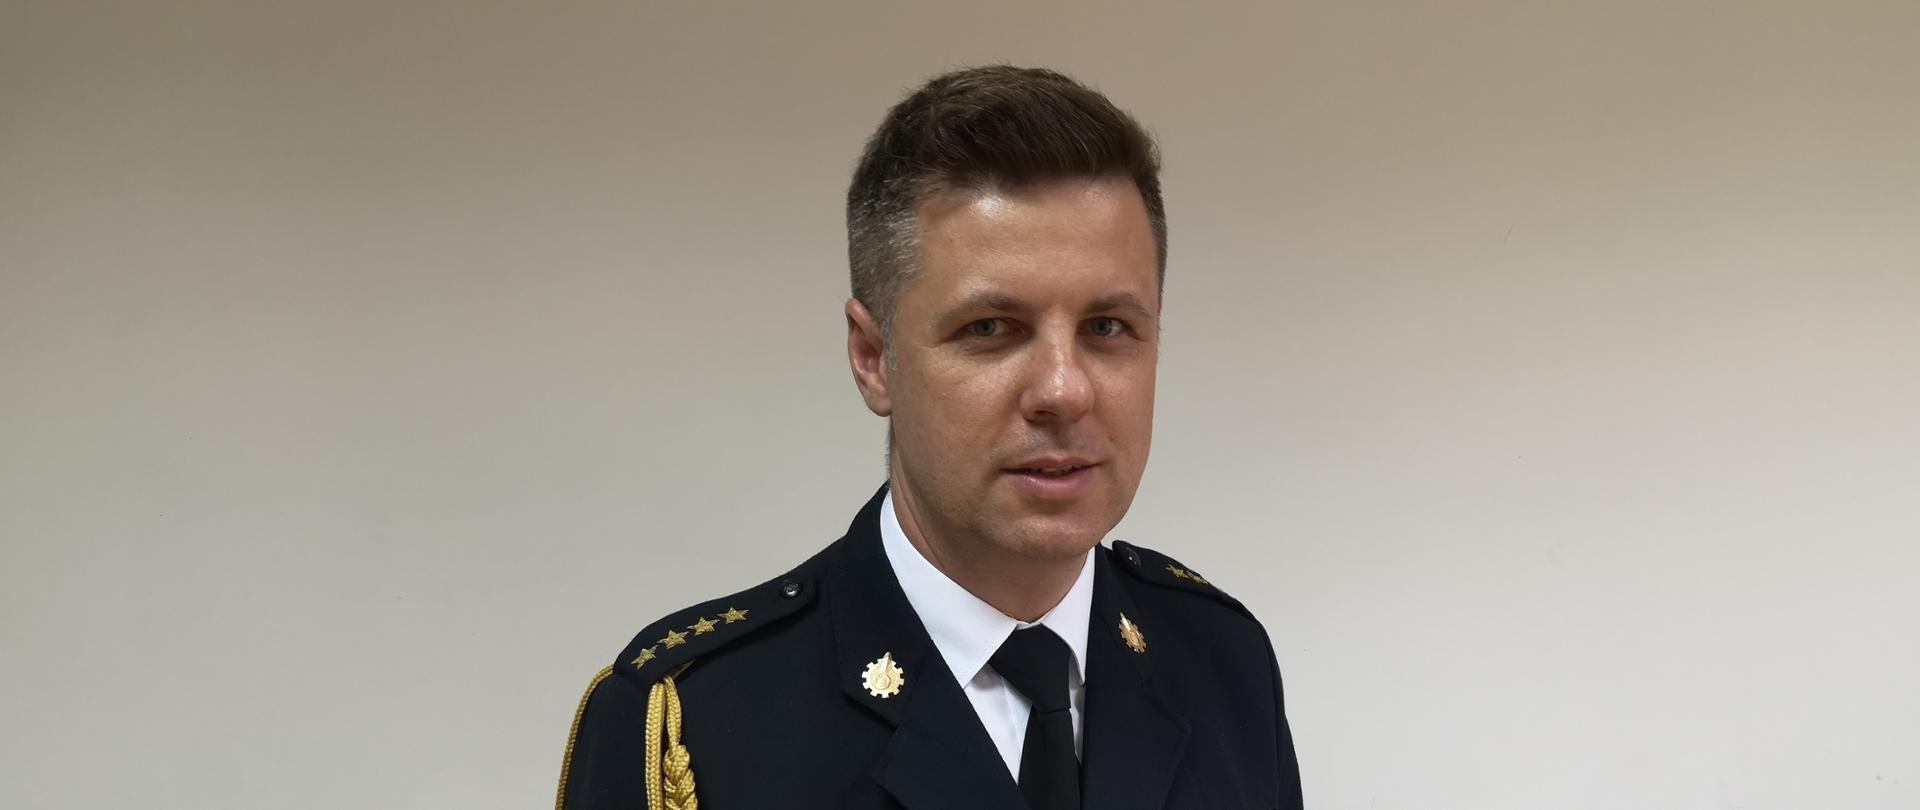 Zastępca Komendanta Powiatowego PSP w Wieliczce st. kpt. Robert Ulman w mundurze wyjściowym. Zdjęcie portretowe.